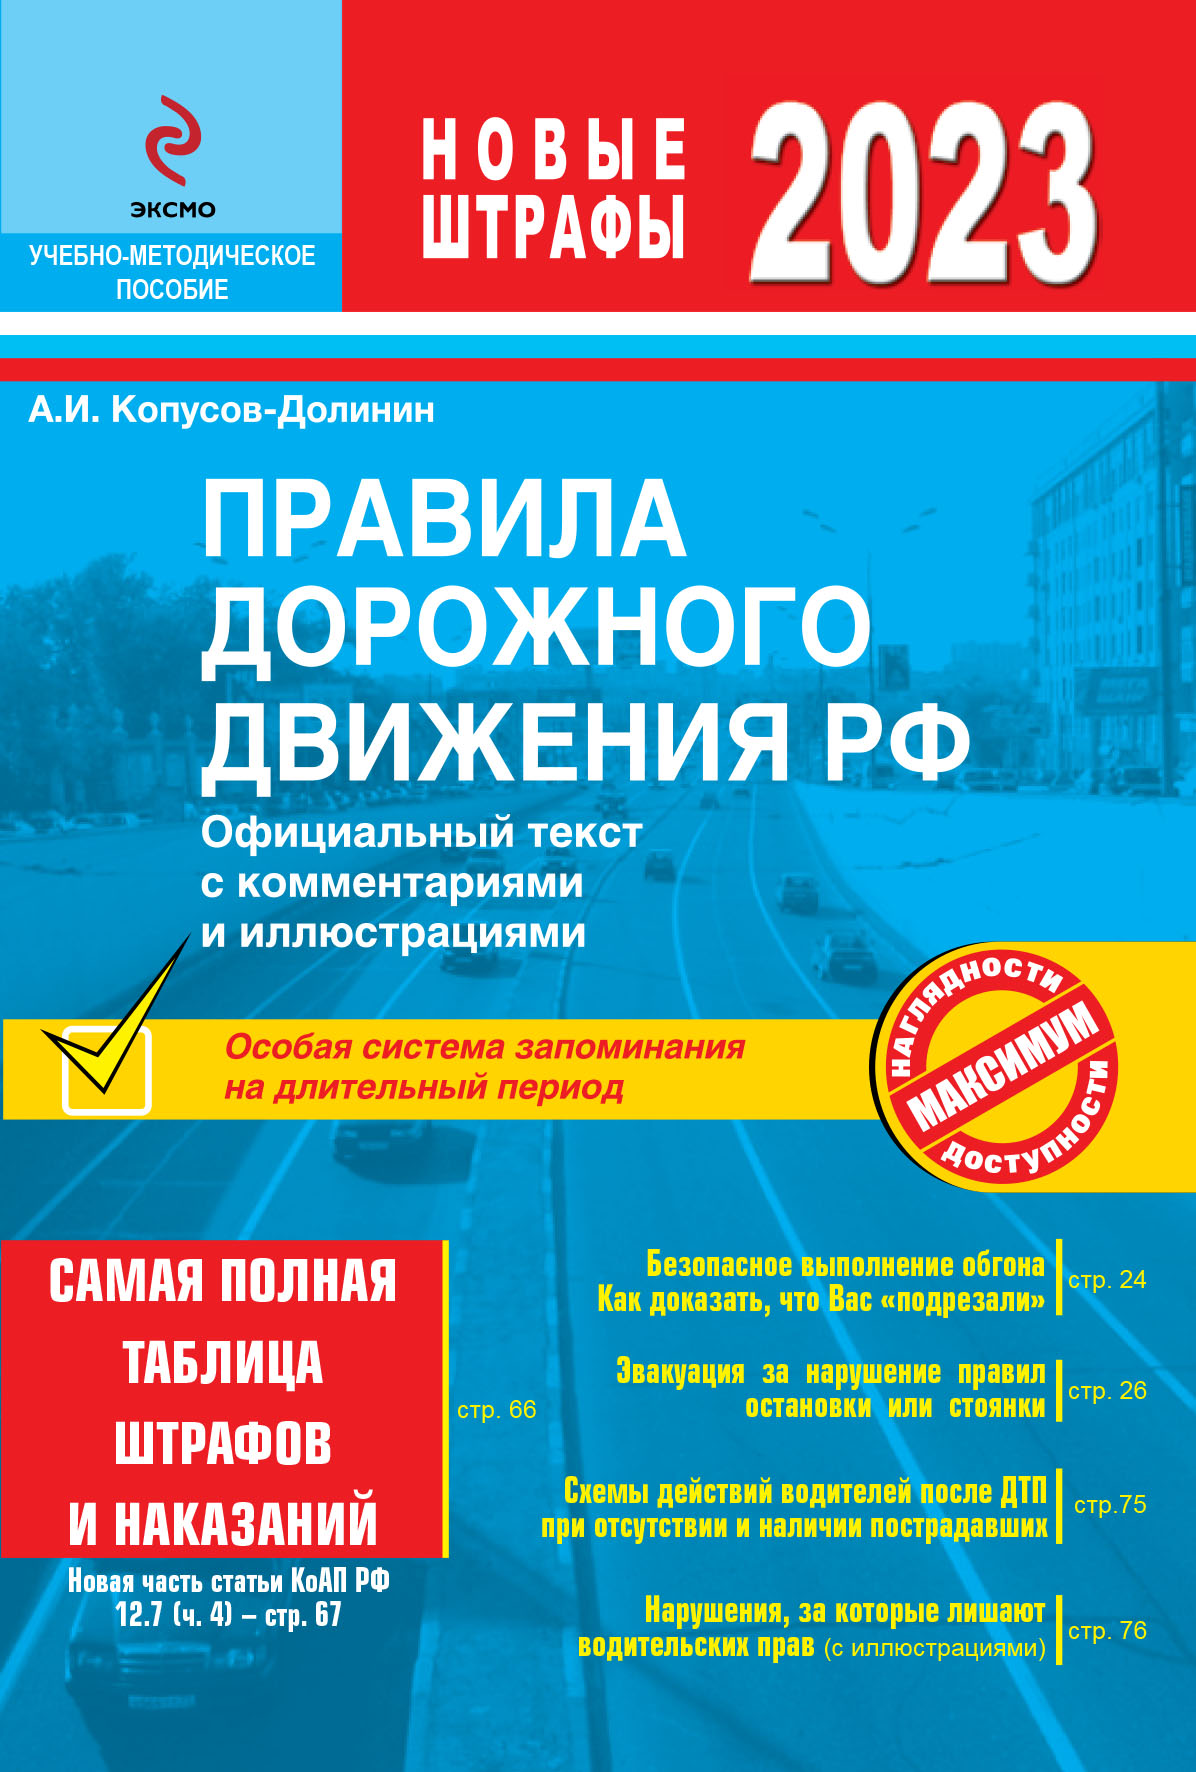 Копусов-Долинин А.И. - Правила дорожного движения 2023. Официальный текст с комментариями и иллюстрациями 